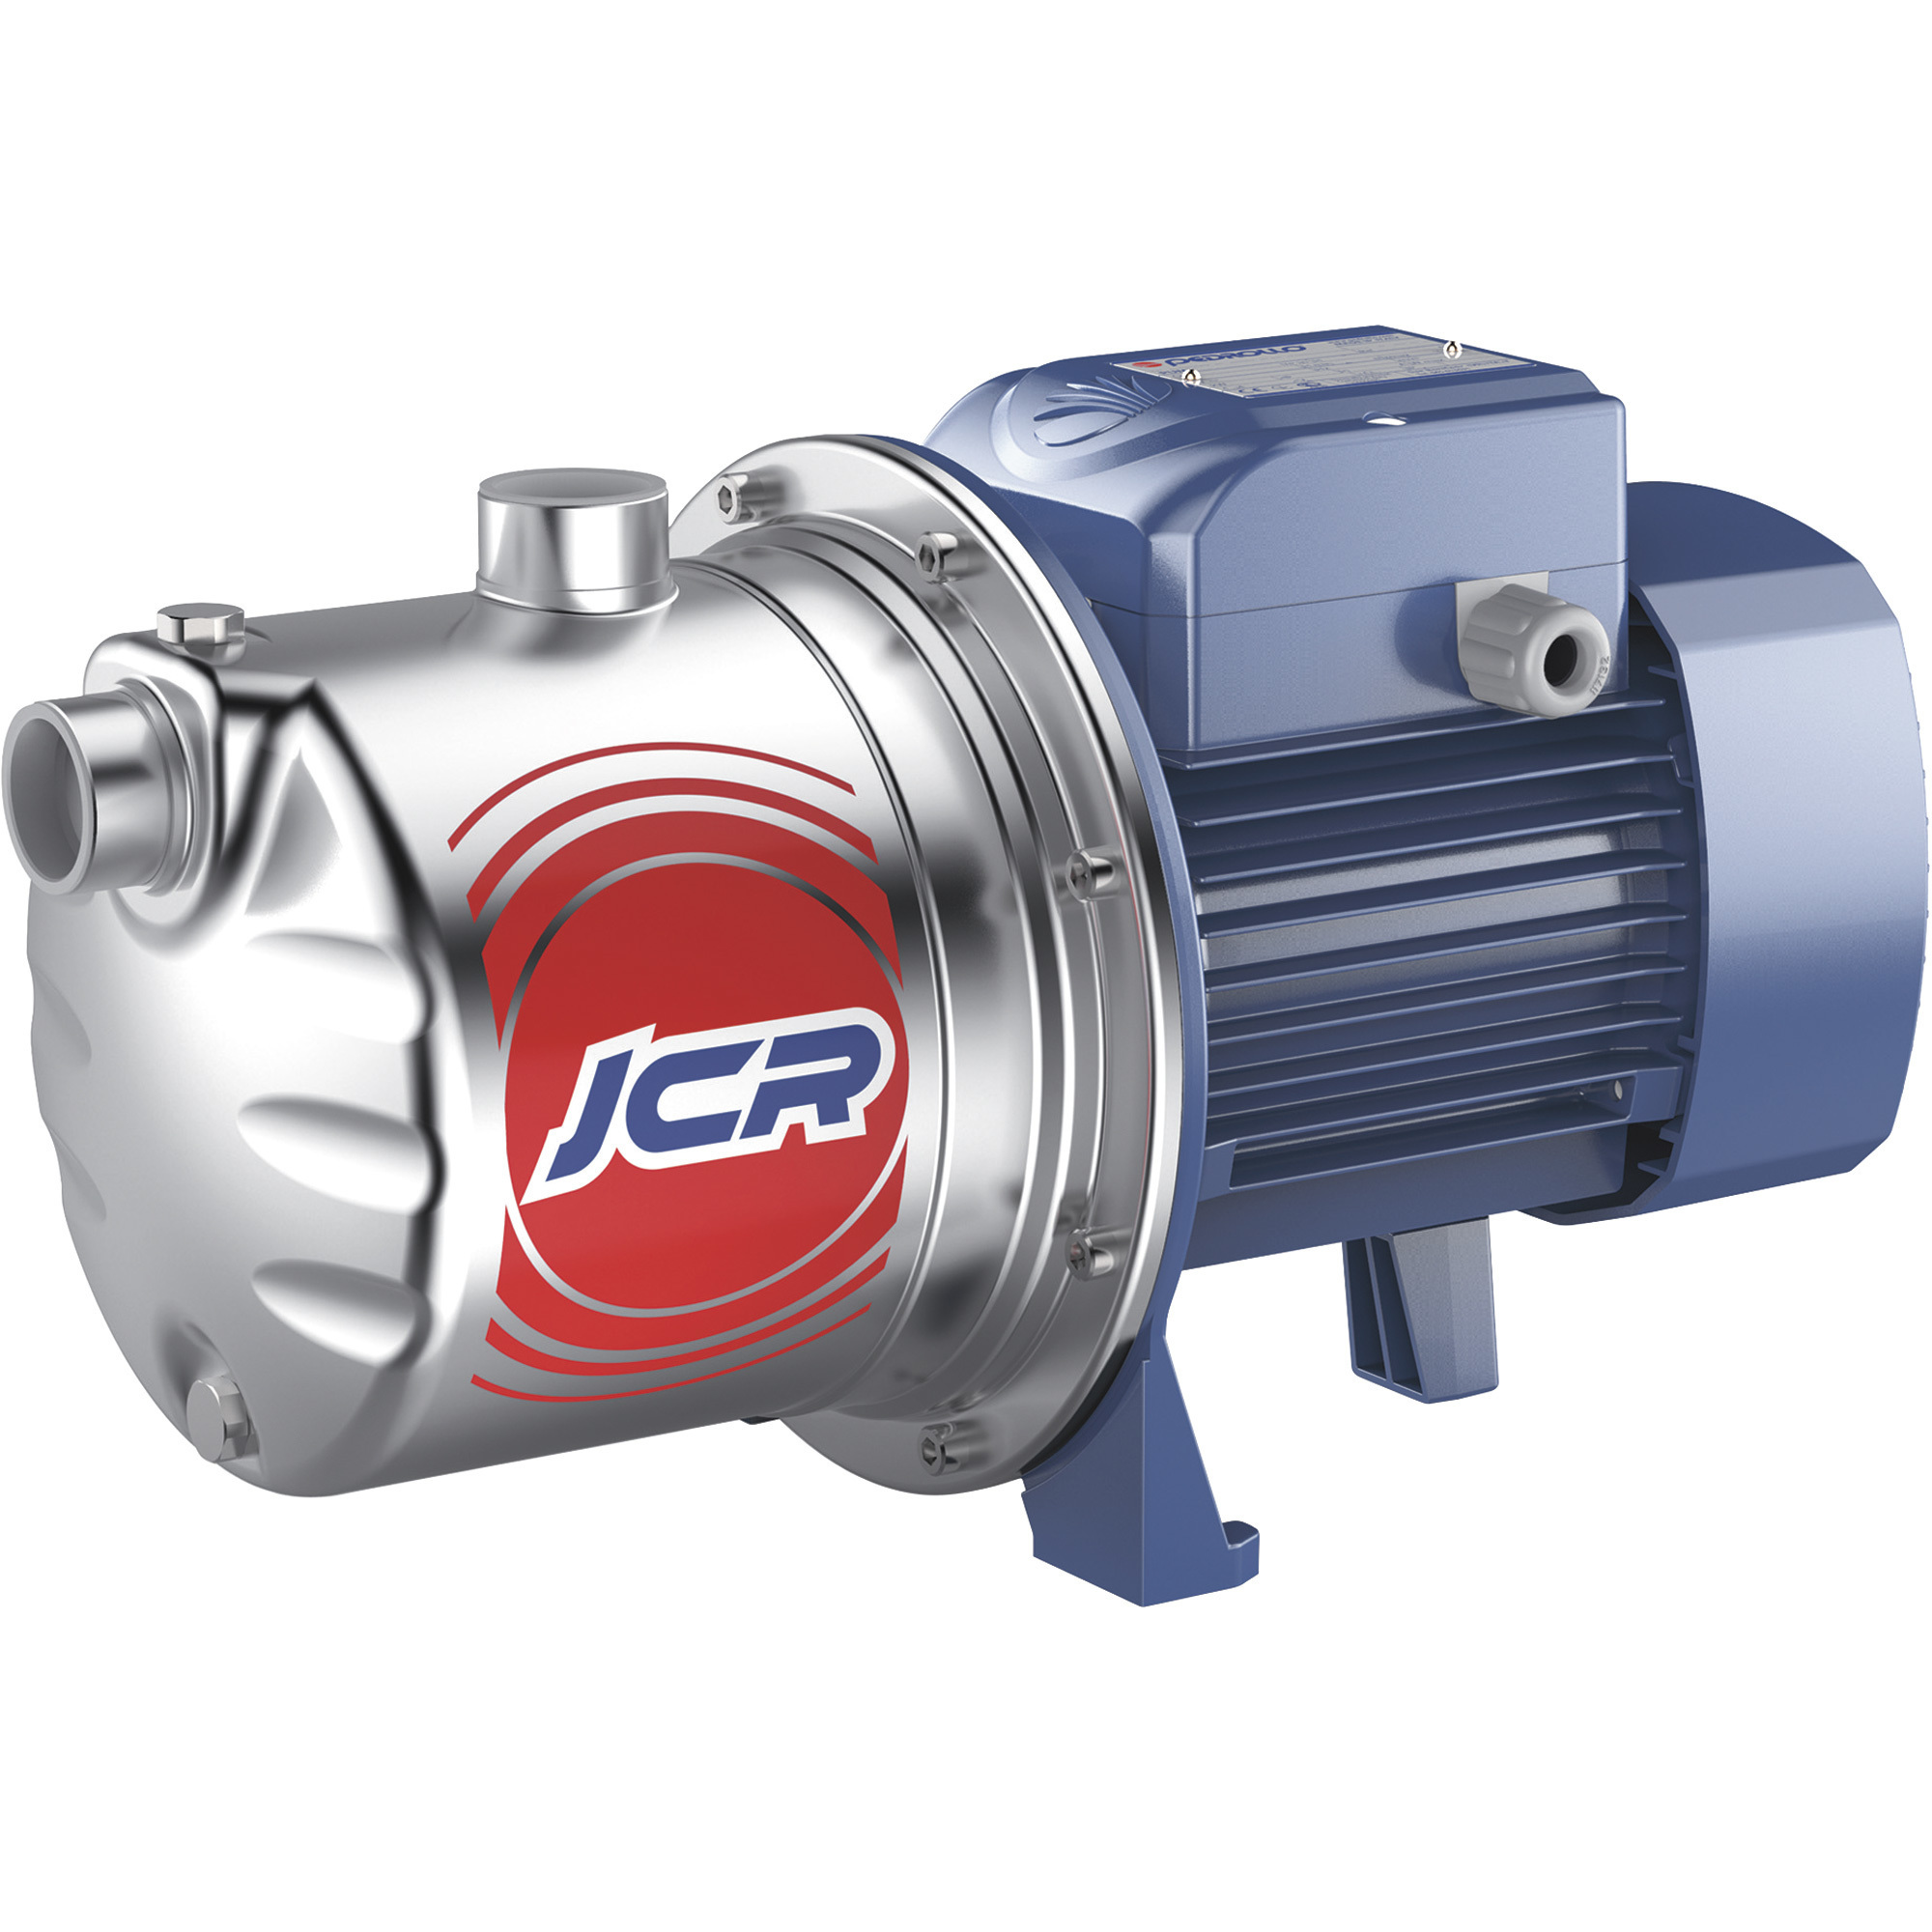 Pedrollo Self-Priming Sprinkler/Booster Water Pump â 1,109 GPH, 1.5 HP, 115/230 Volts, Model JCRm 2A